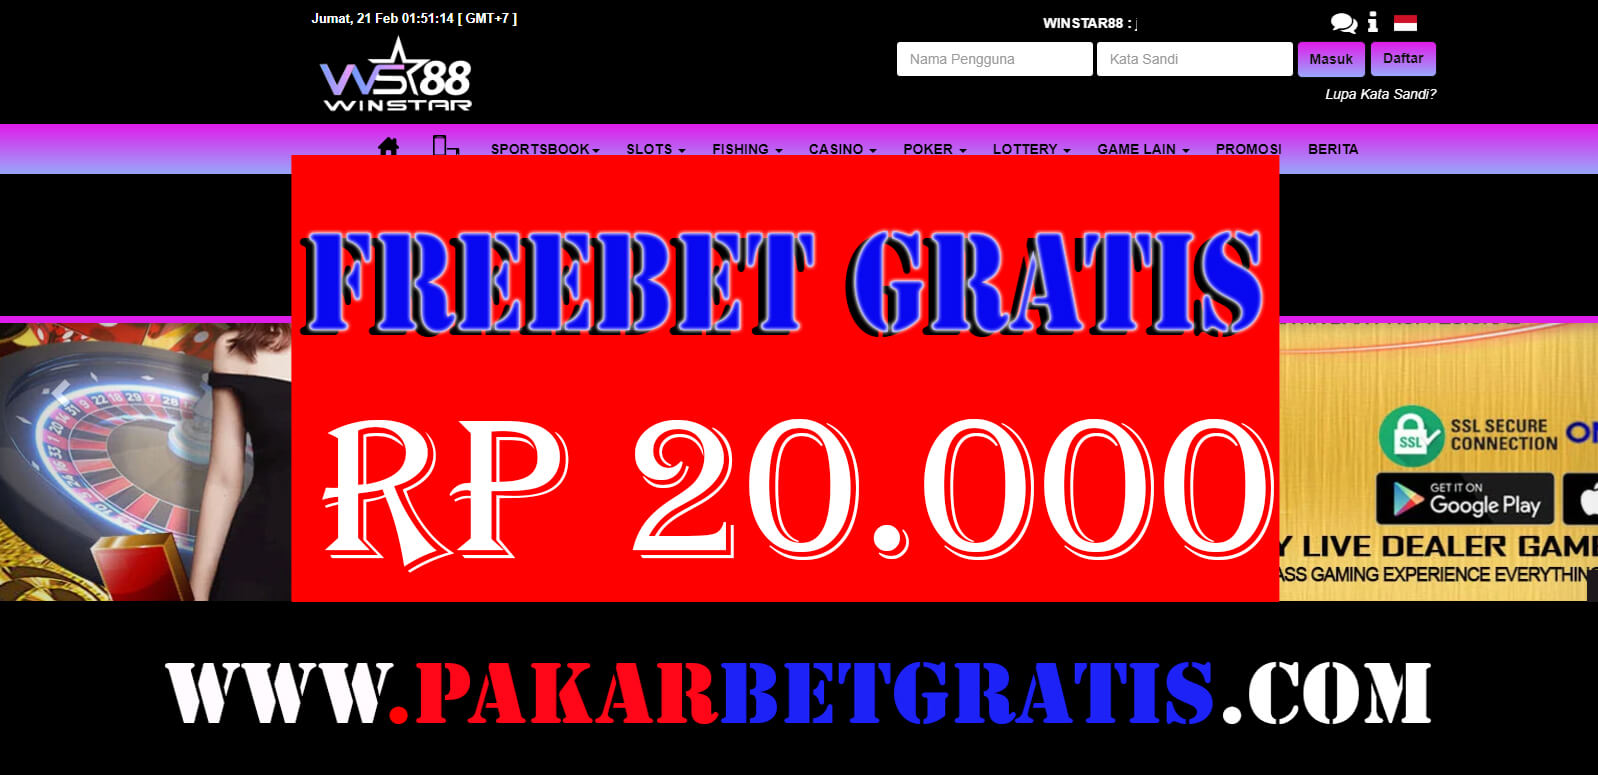 Freebet gratis winstar88 Rp 20.000 tanpa deposit